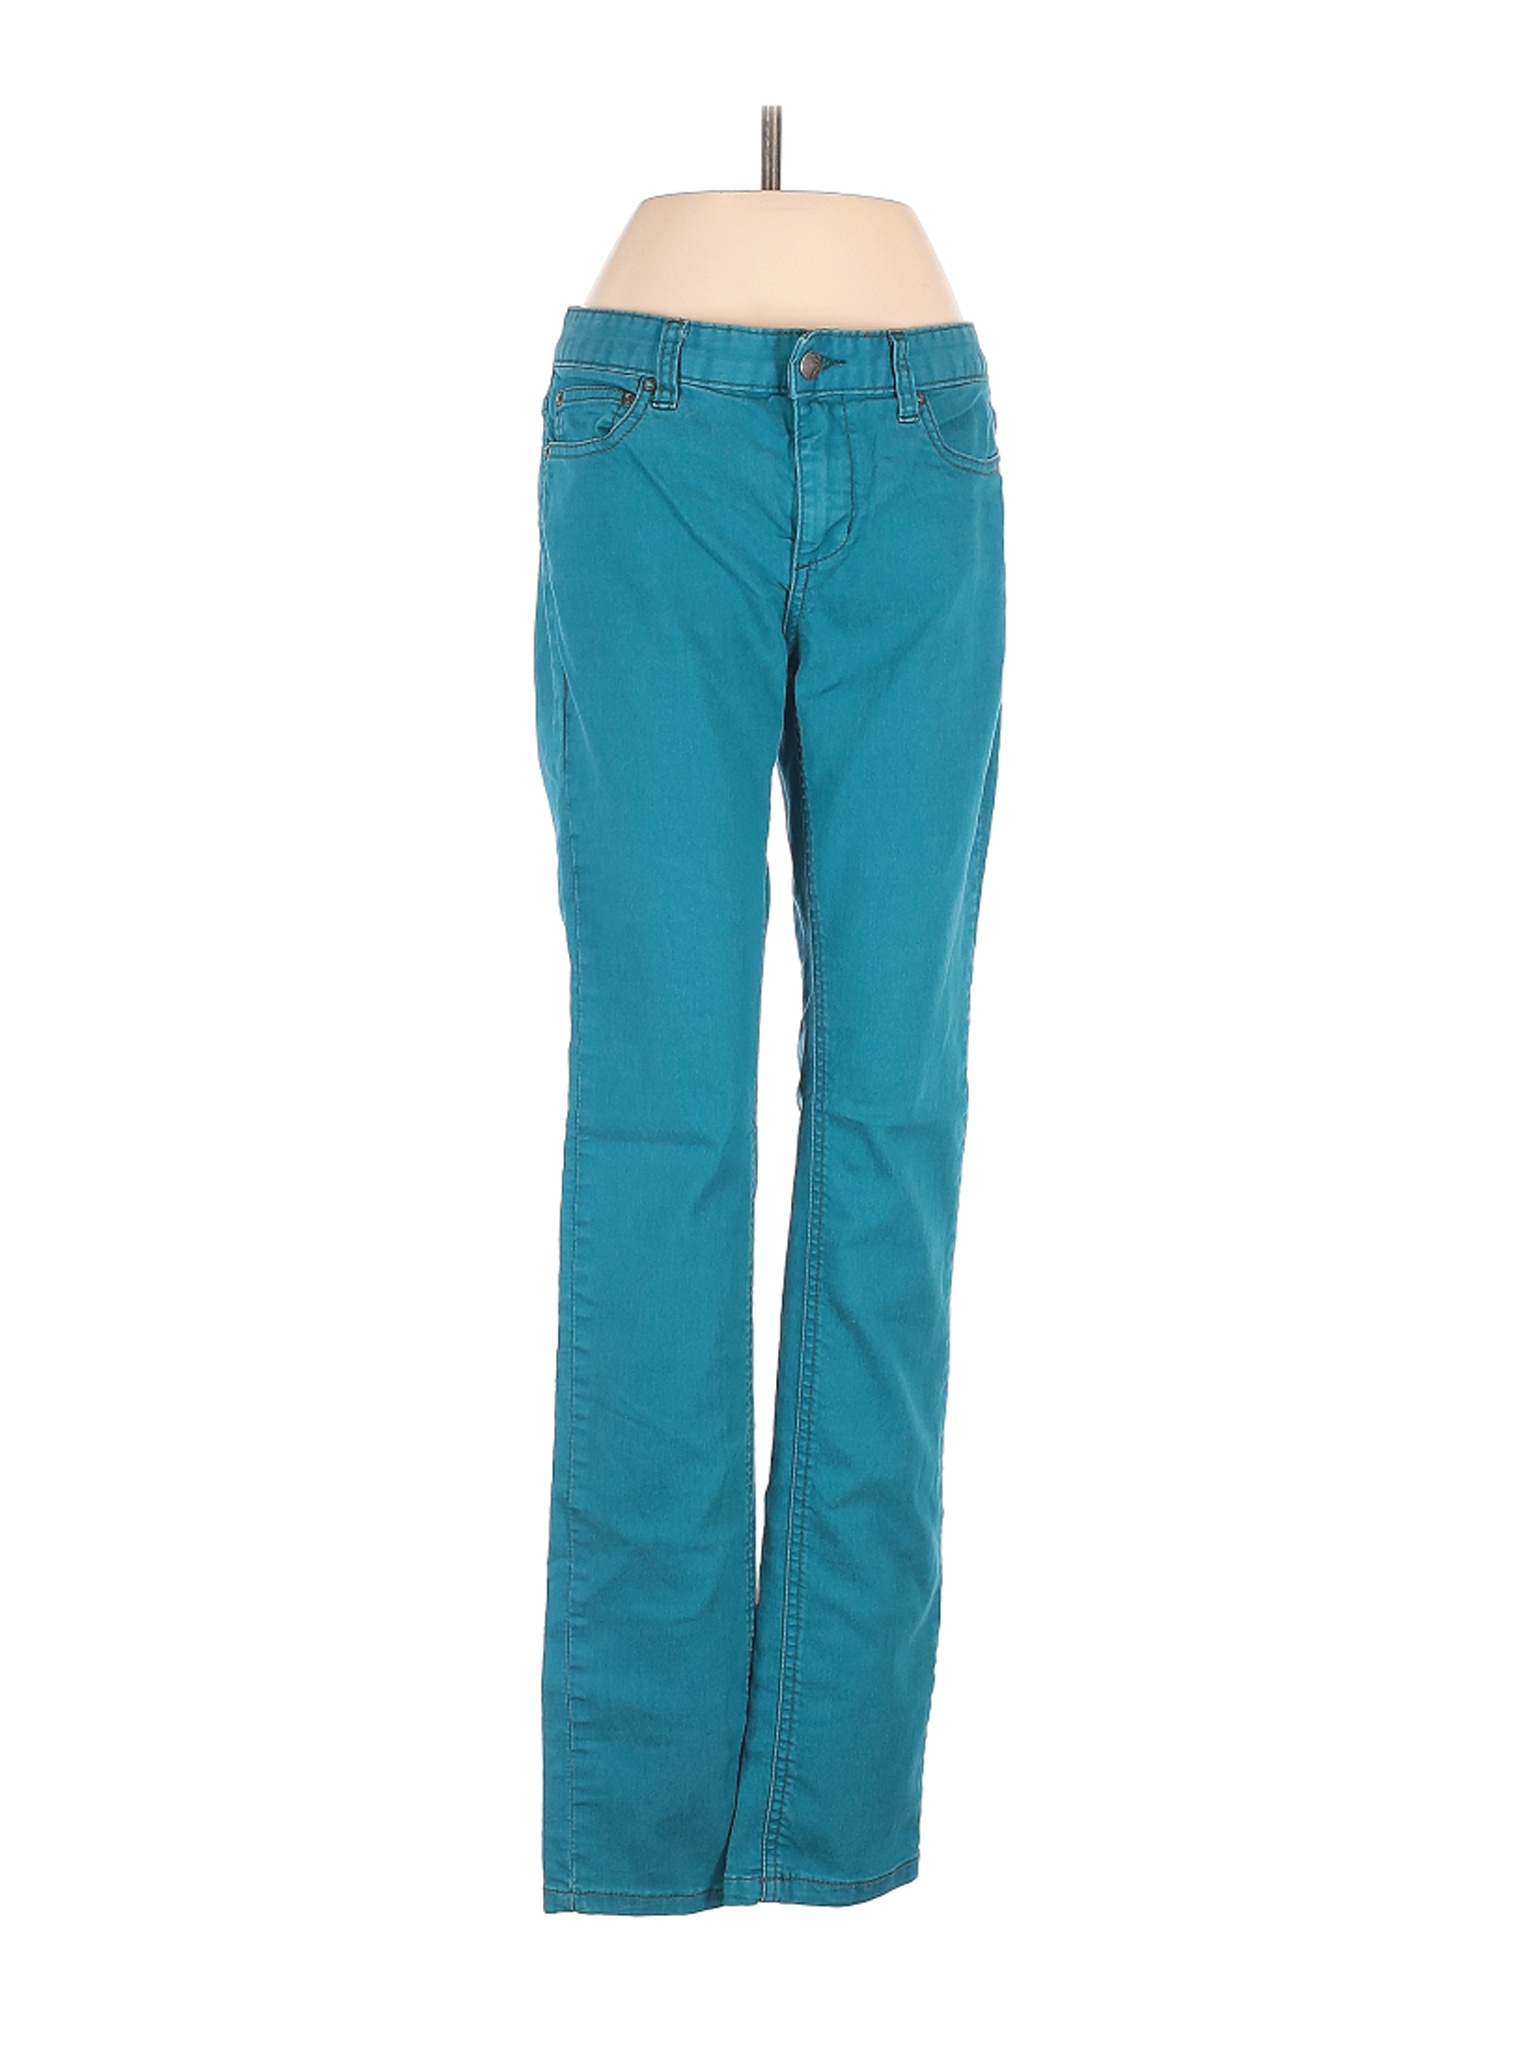 Free People Women Green Jeans 26W | eBay